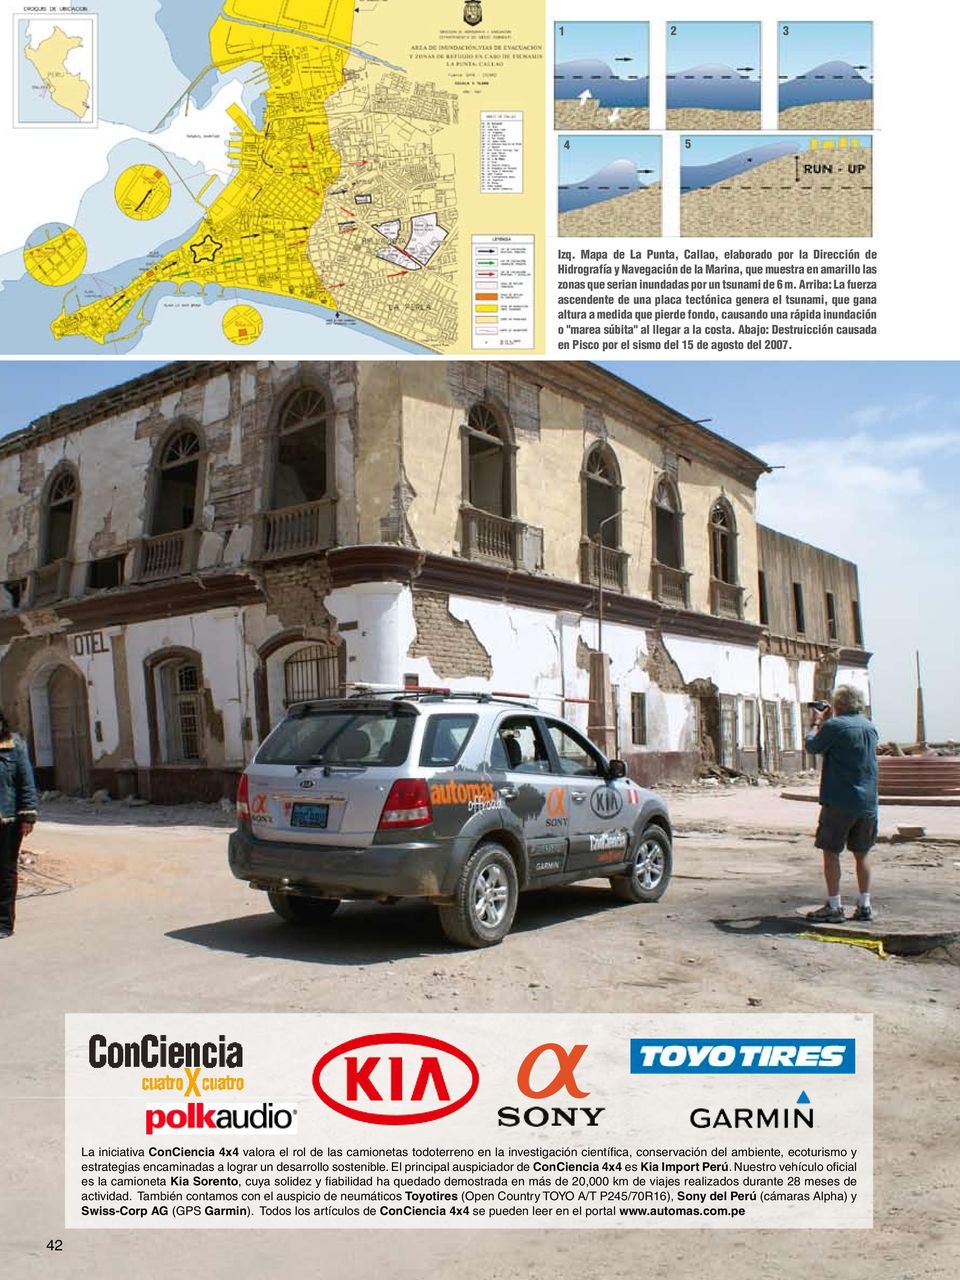 Abajo: Destruicción causada en Pisco por el sismo del 15 de agosto del 2007.